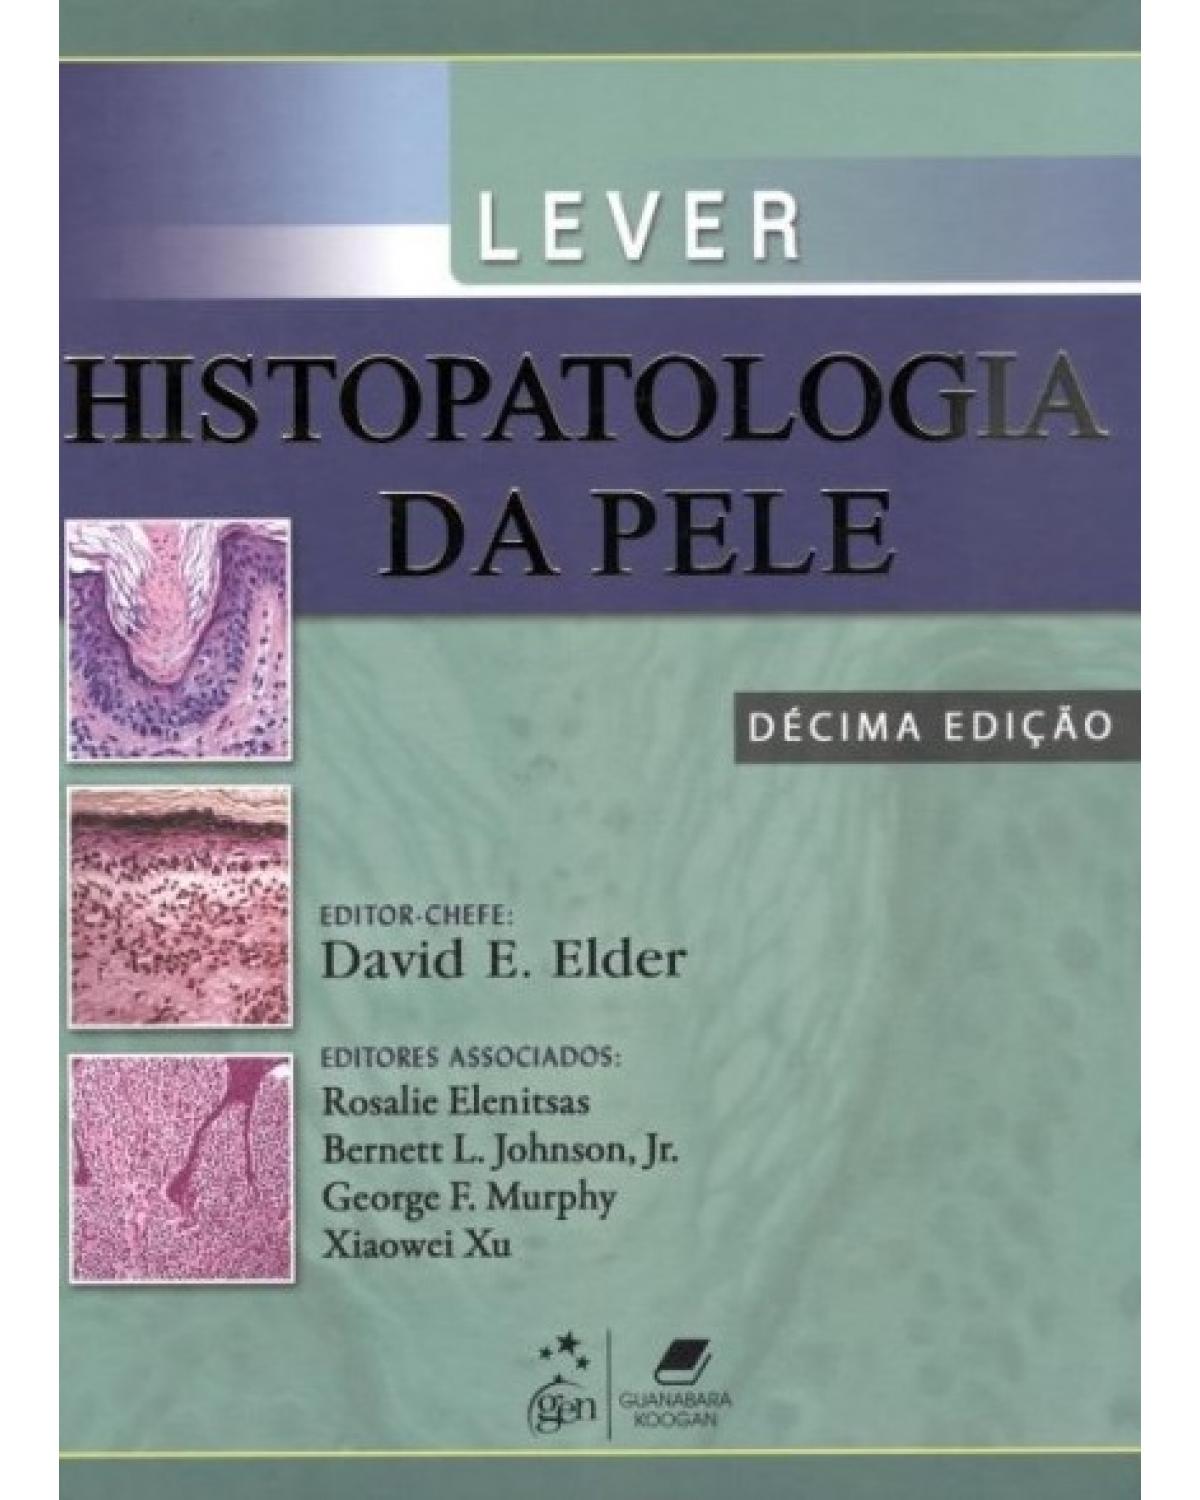 Lever - Histopatologia da pele - 10ª Edição | 2011